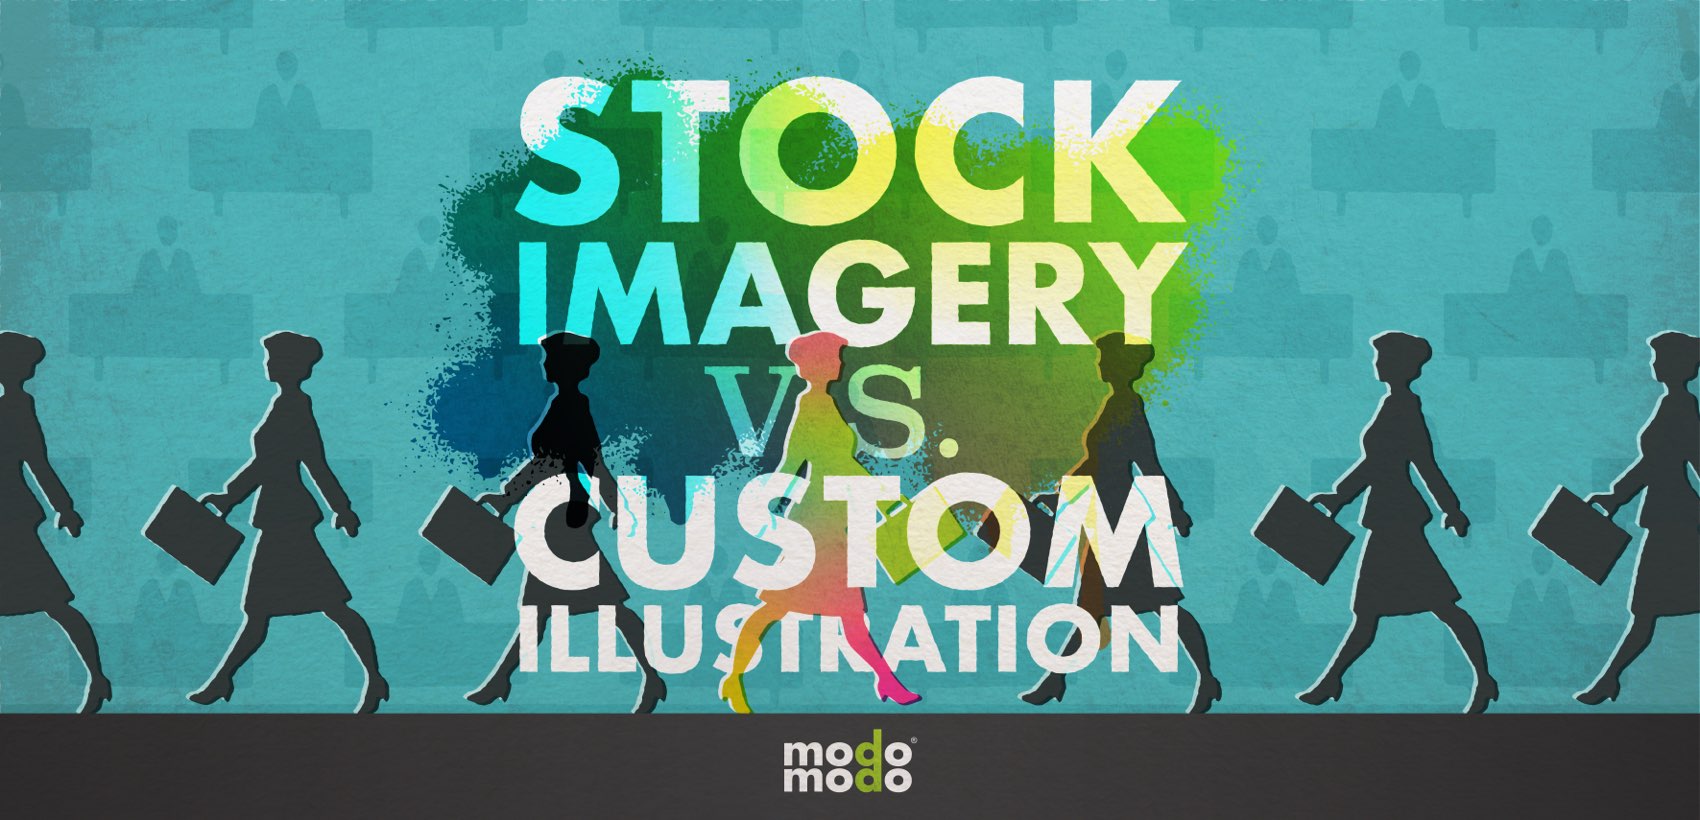 Stock imagery vs custom illustration